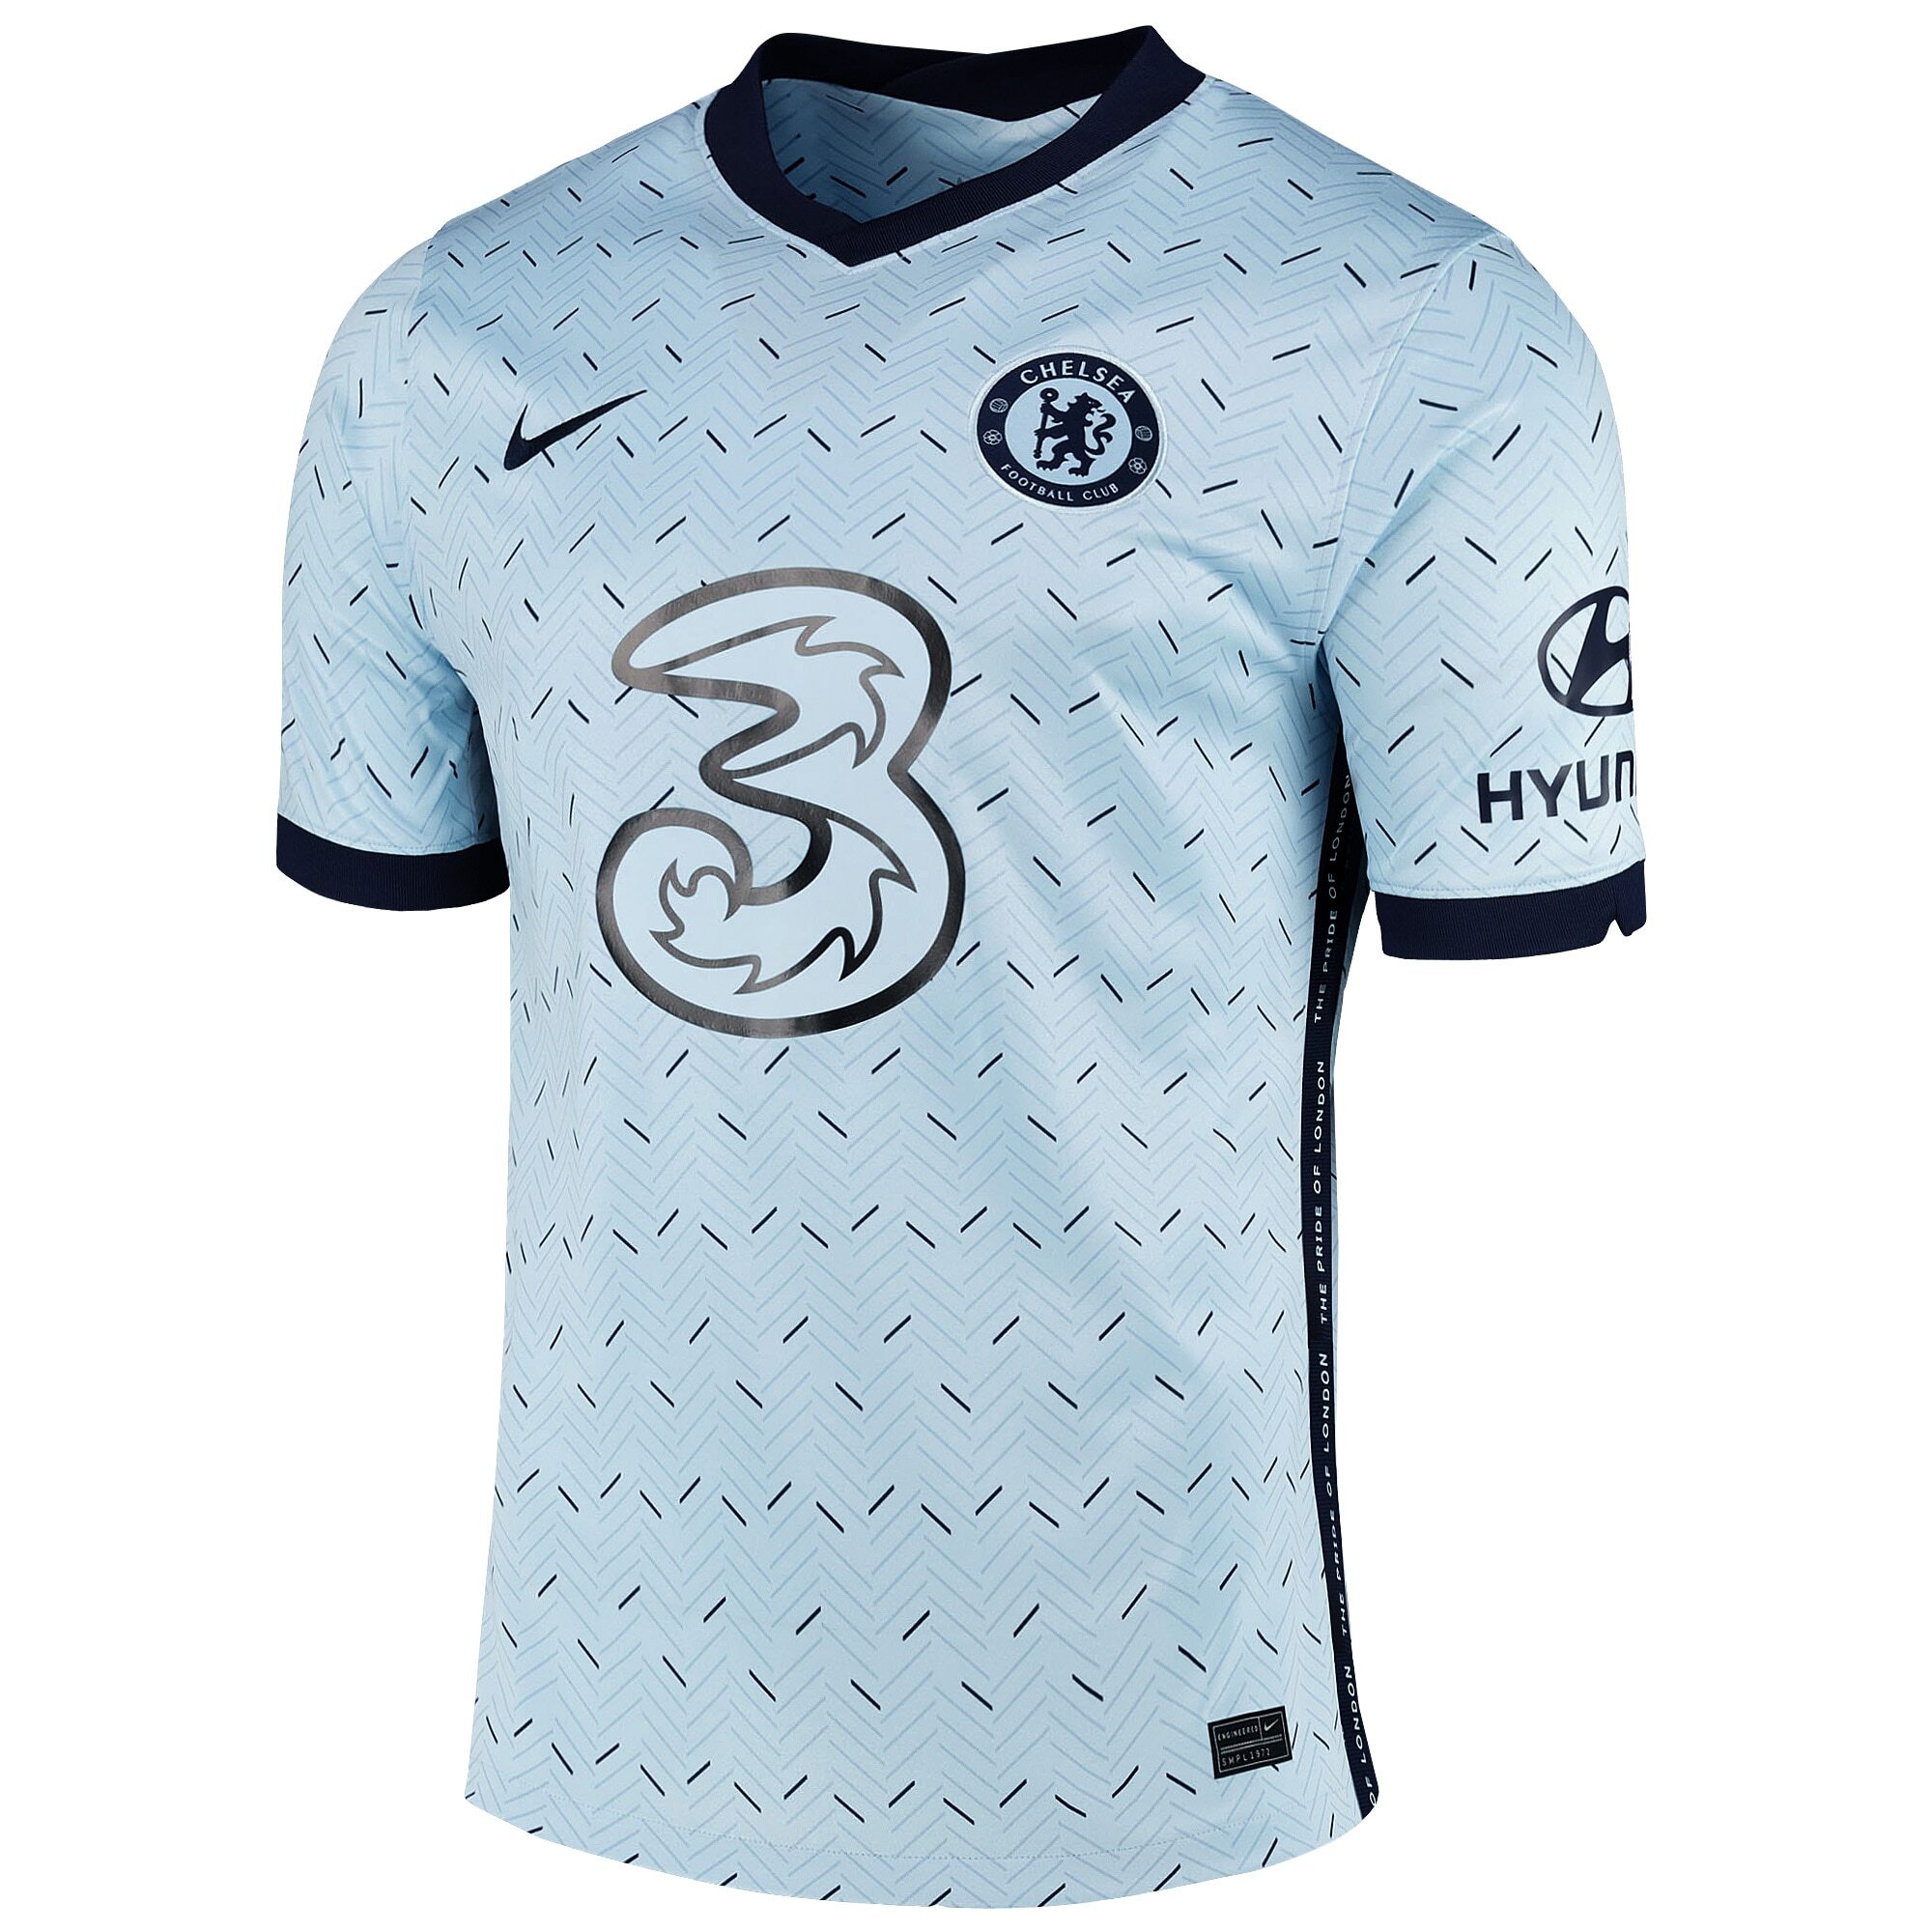 New 2020-2021 Lens Home/Away Soccer Jersey Short Sleeve Man Tshirt S-XXL